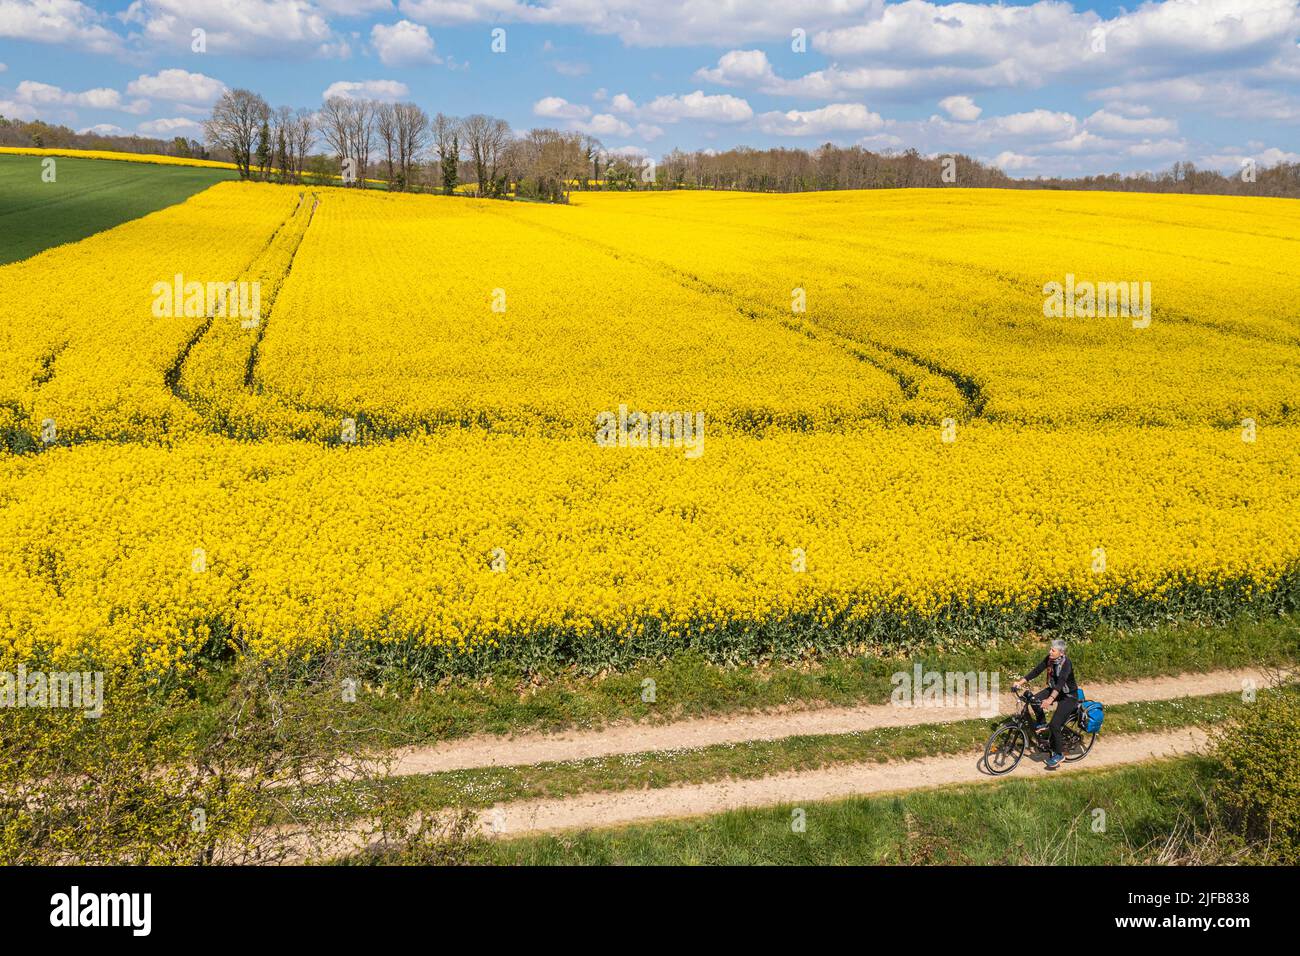 France, Charente, cycliste sur la Coulée d'OC (partie de la route du cycle de la Flow Vélo) bordant un champ de colza en fleur entre les villages de Feuillade et Marthon (vue aérienne) Banque D'Images